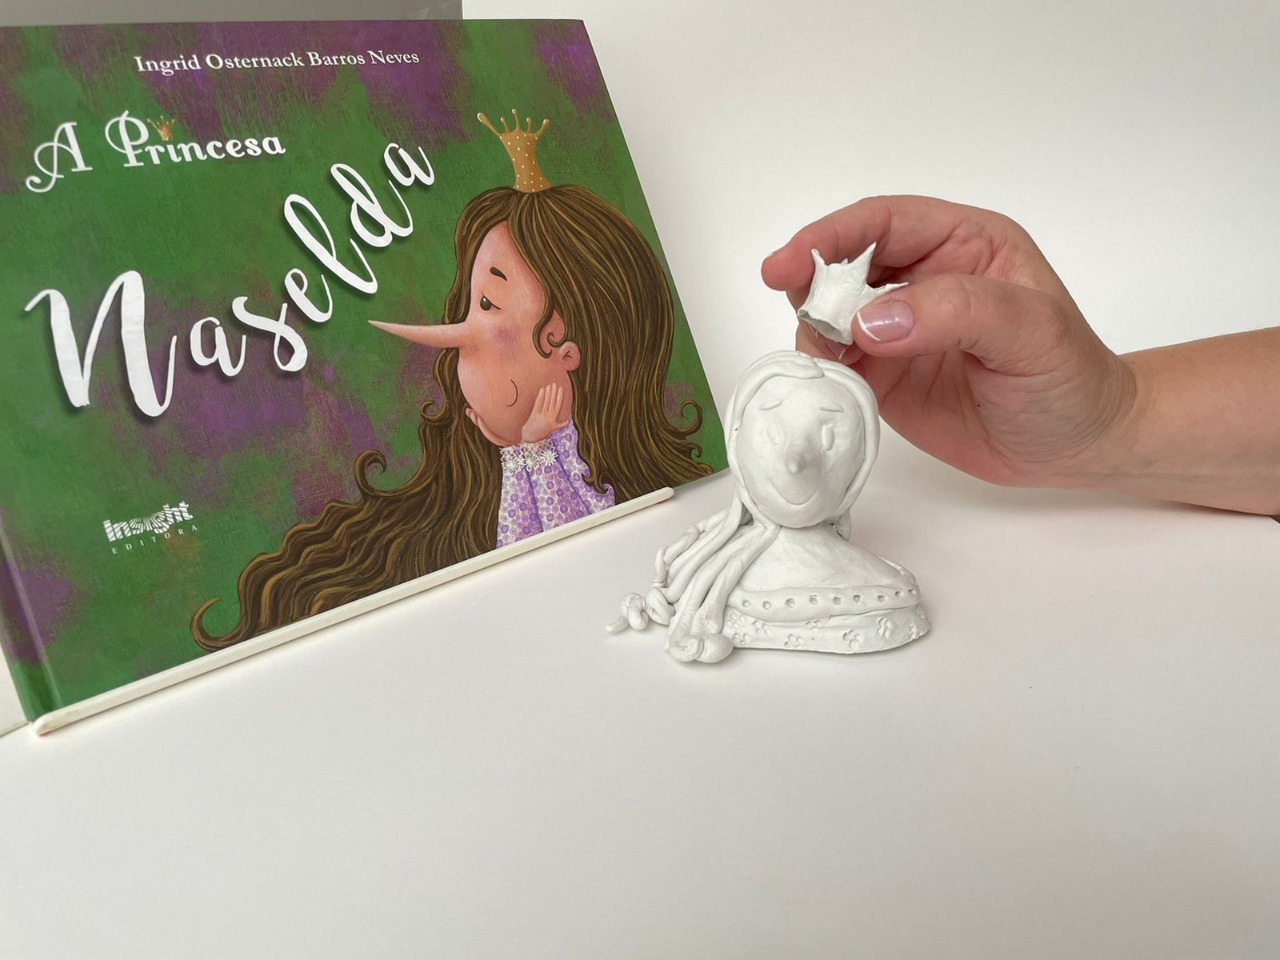 Das Buch „A Princesa Naselda“ erhält eine Audioversion mit Audiodeskription